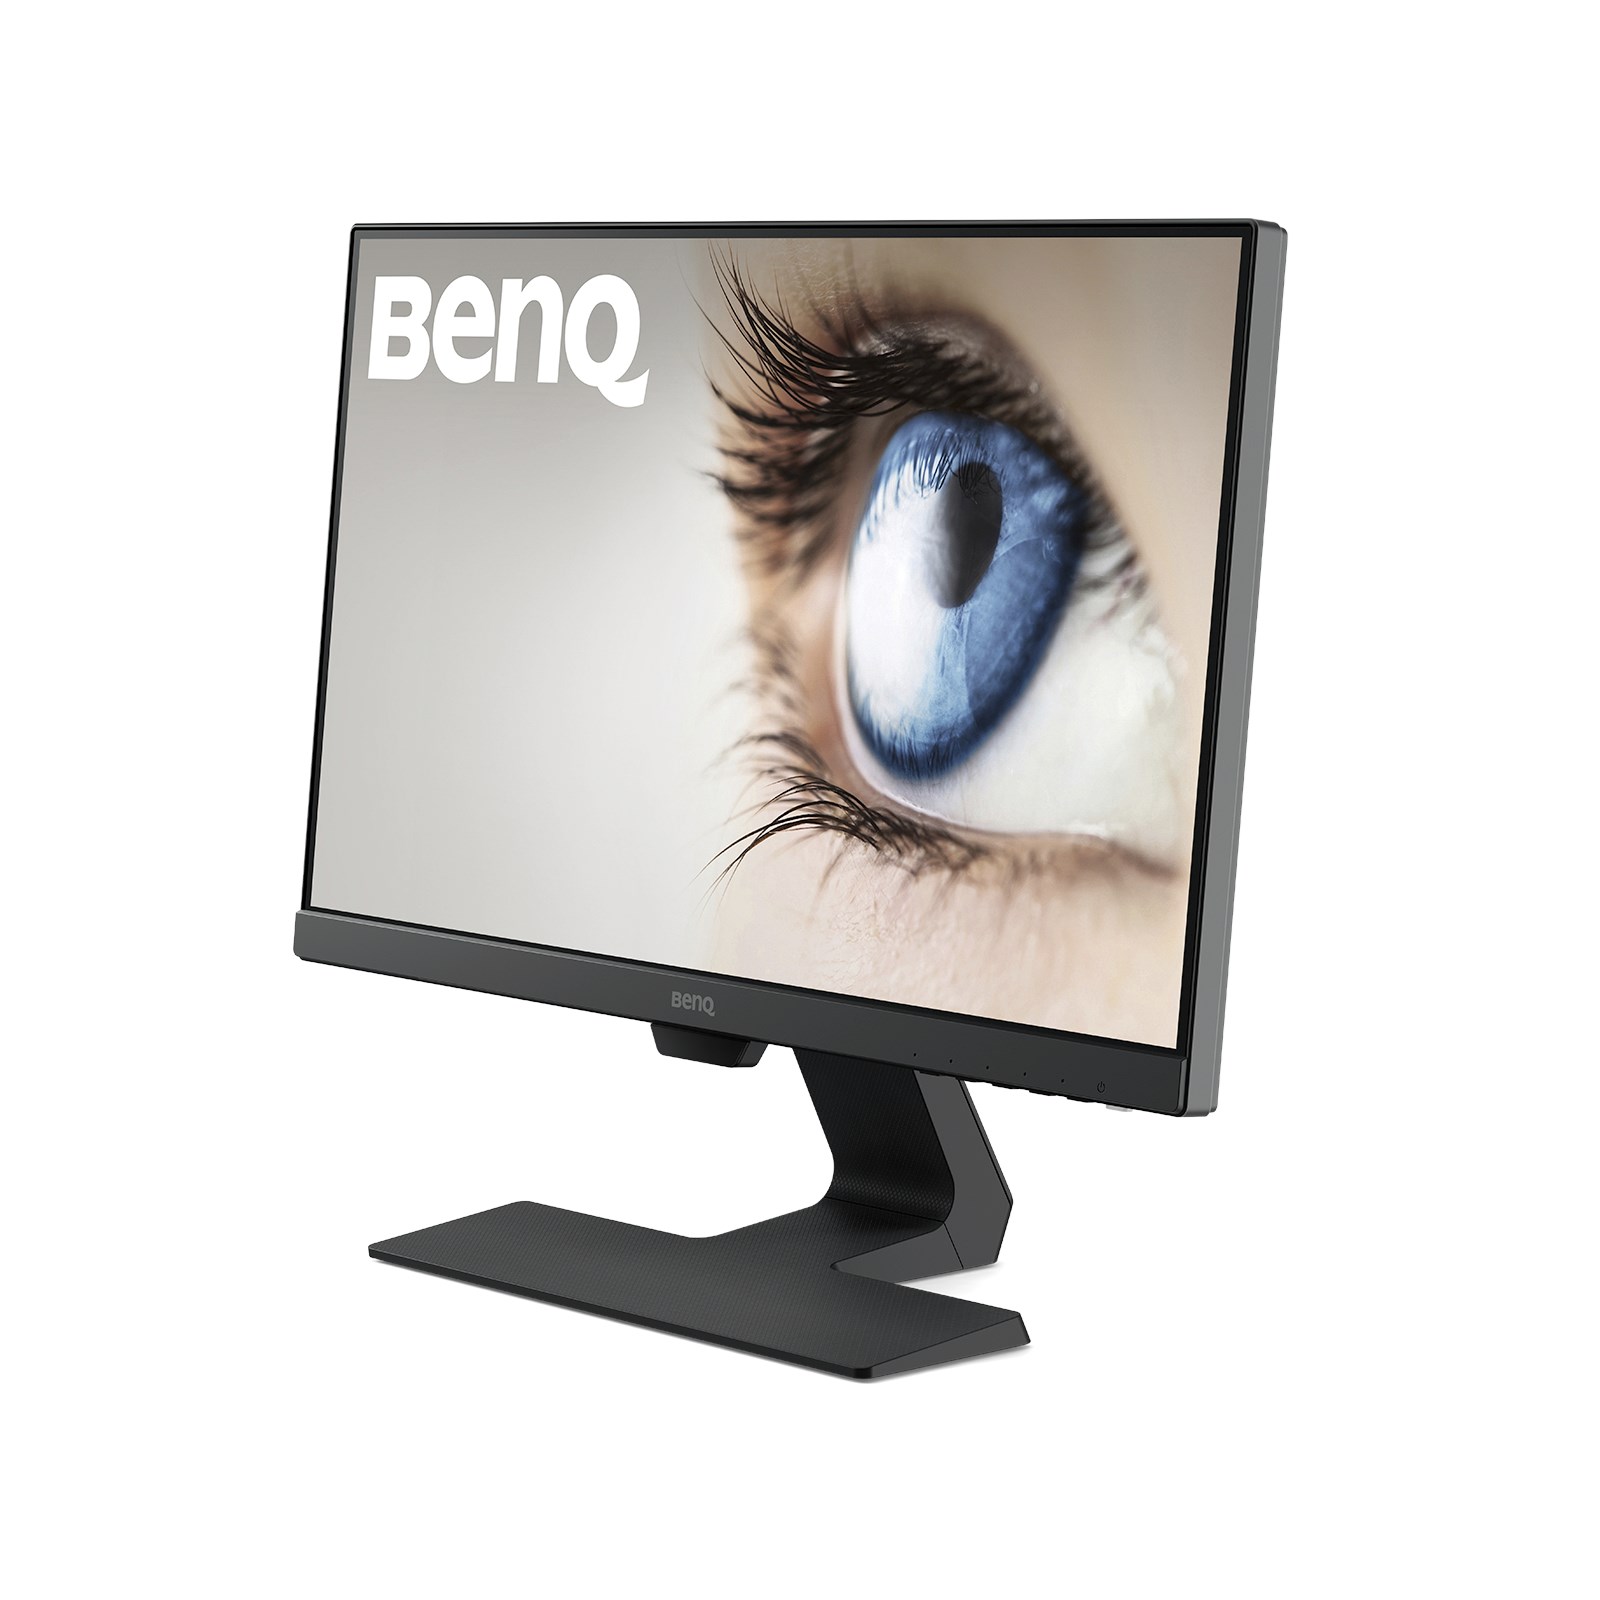 「リングフィットRTA パソコン BenQ モニター ほぼ未使用品 21.5インチ GW2280 ディスプレイ